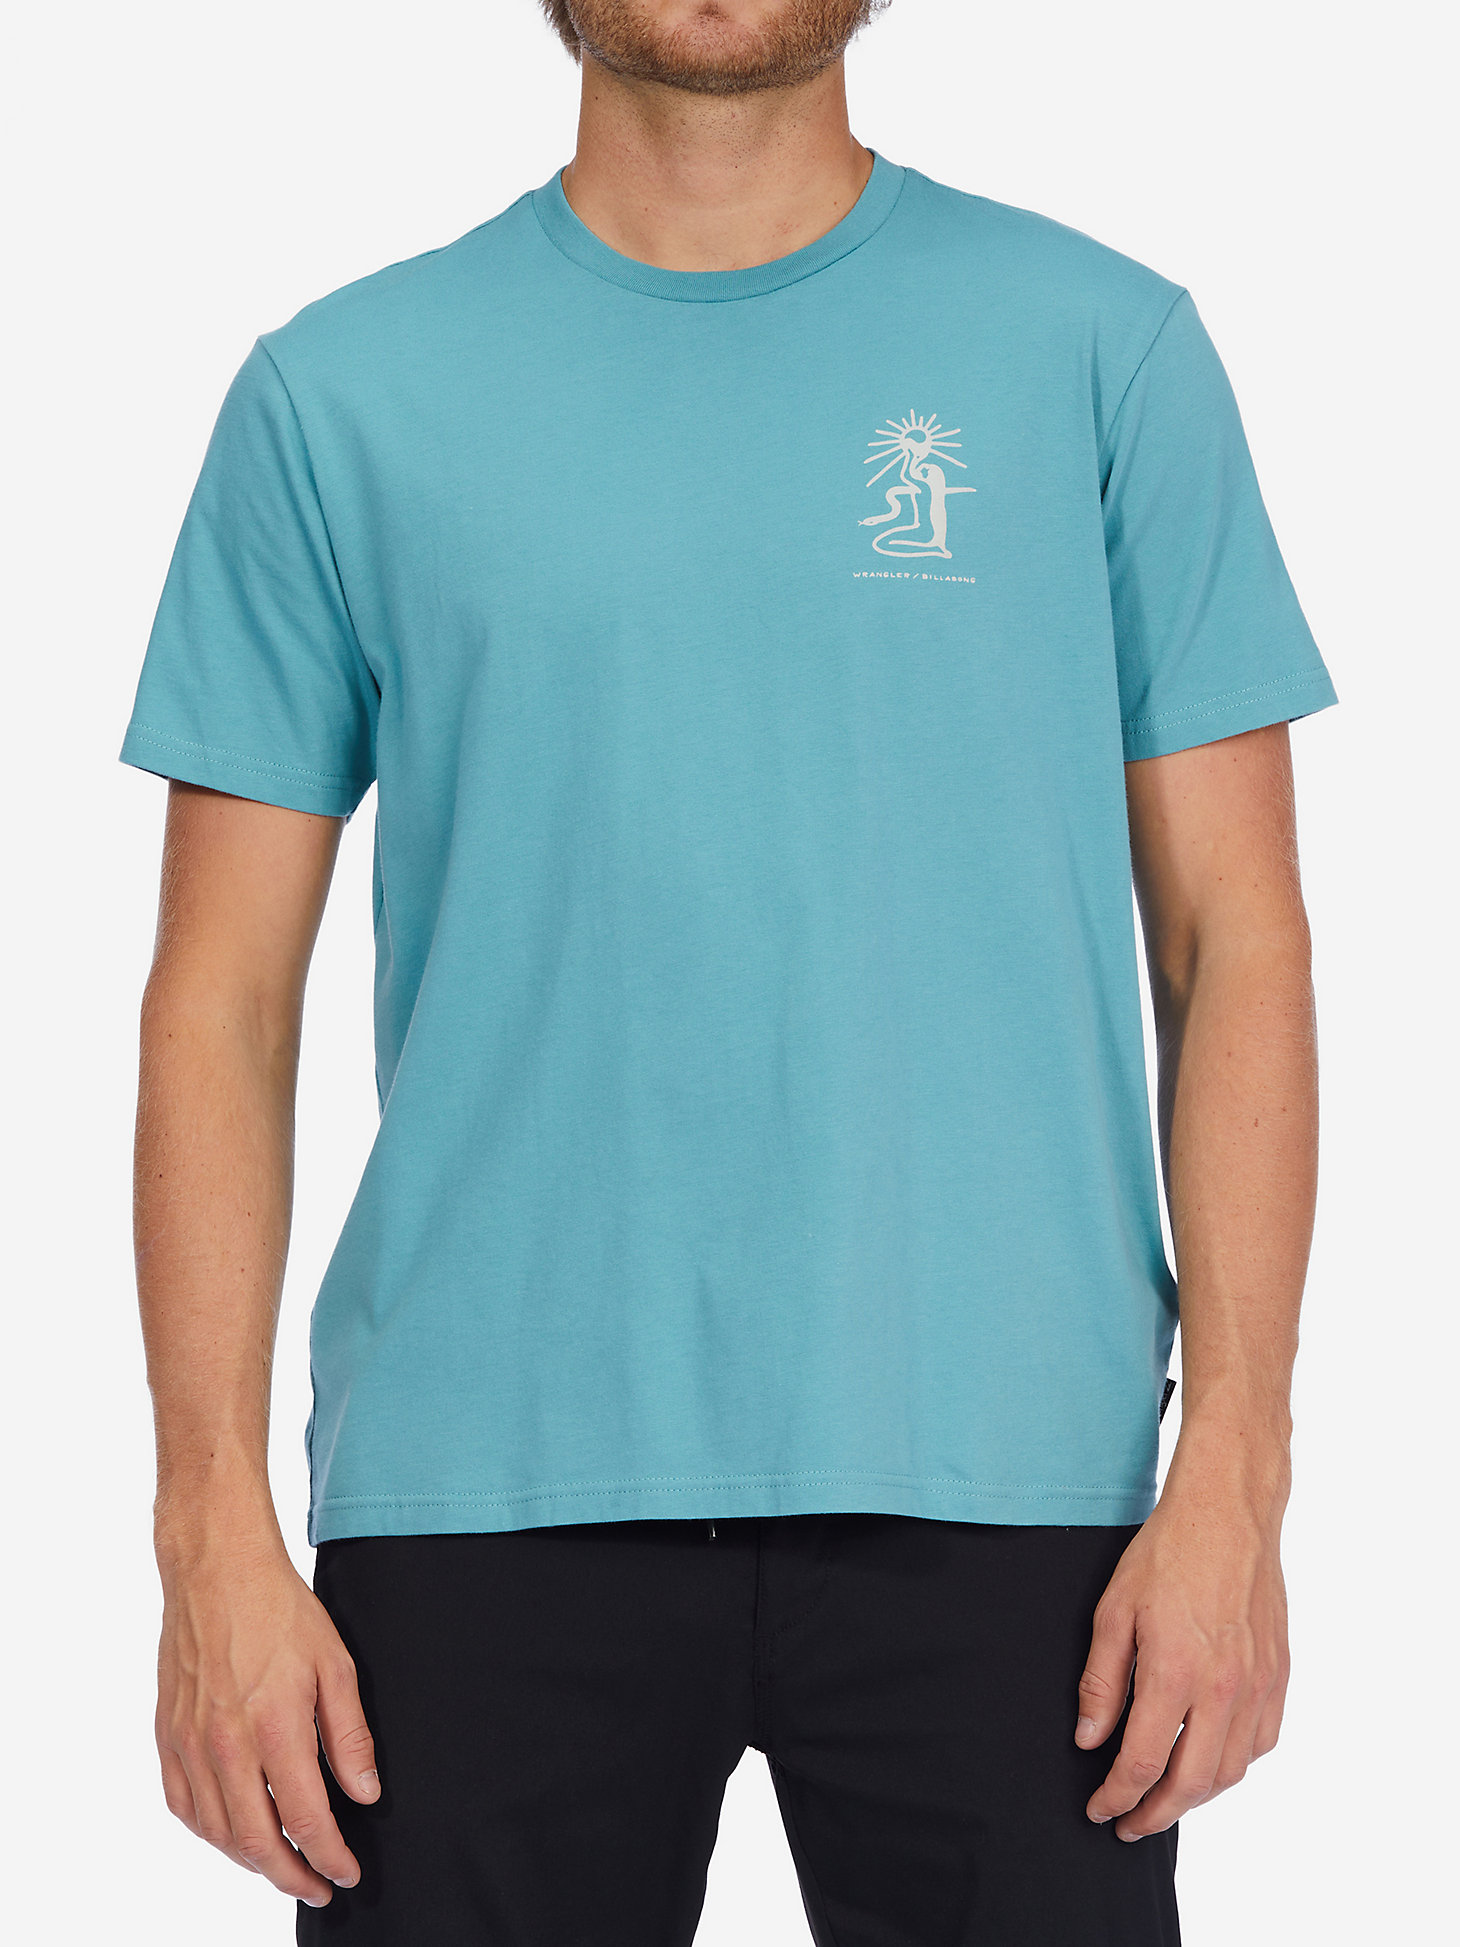 Billabong x Wrangler® Men's Rancher Graphic T-Shirt in Mint main view